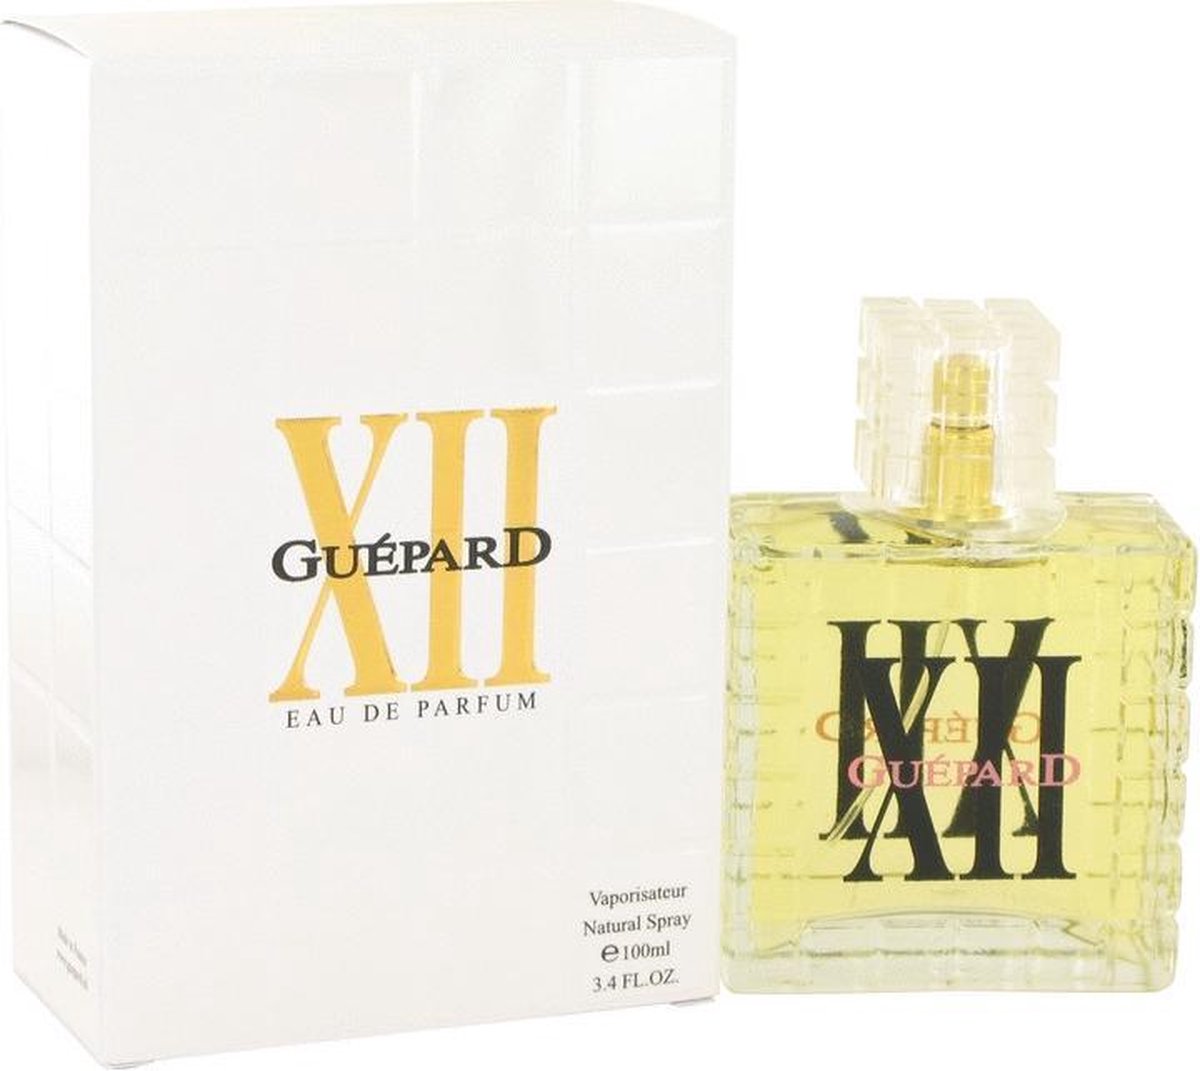 Guepard XII by Guepard 100 ml - Eau De Parfum Spray